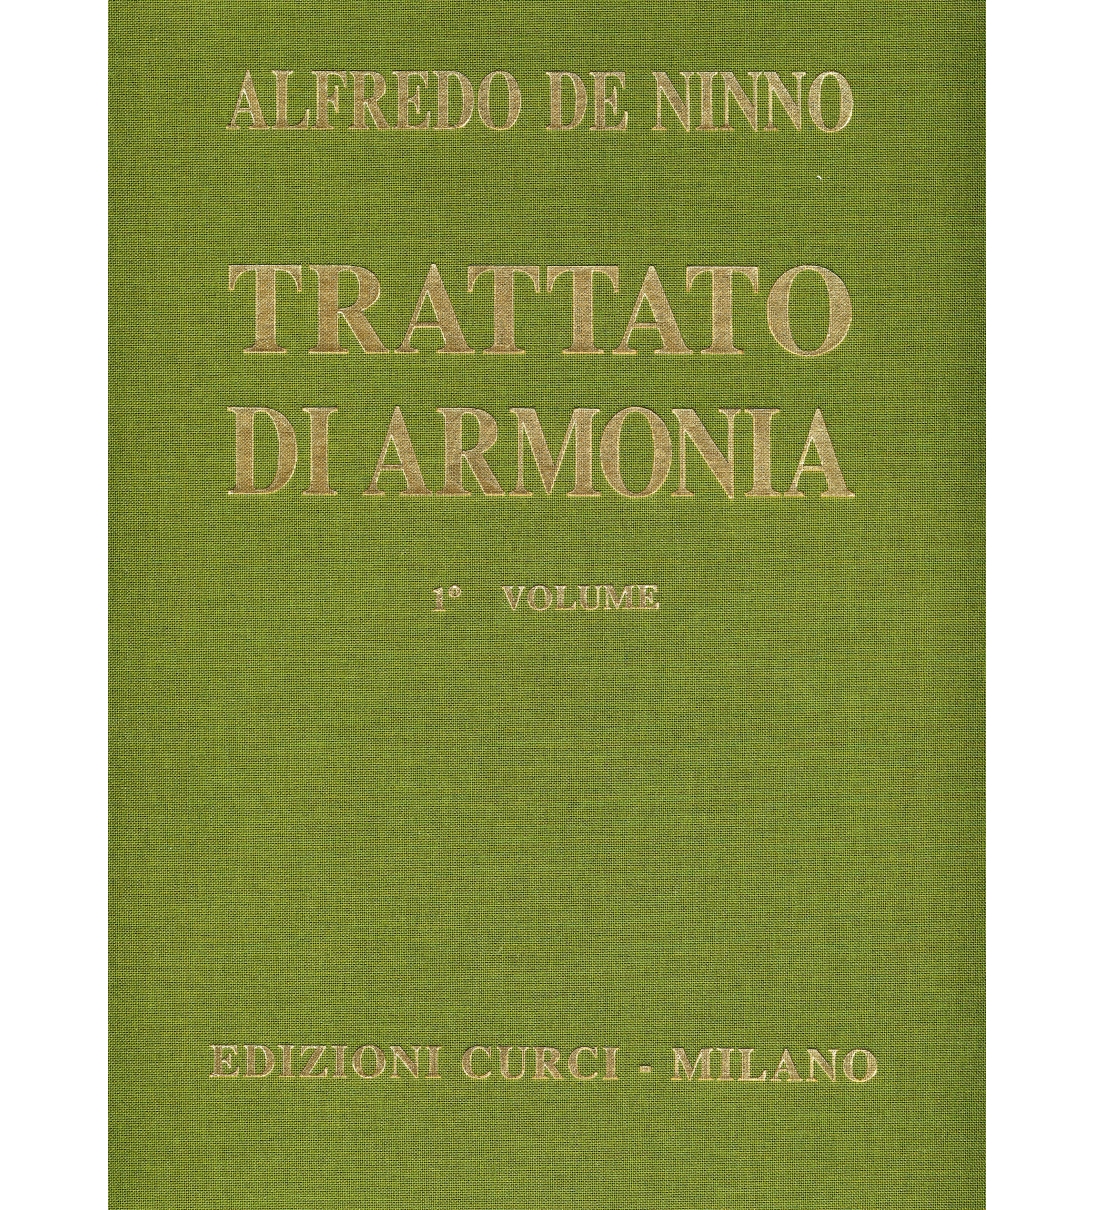 Trattato d'armonia Volume 1  di Alfredo De Ninno